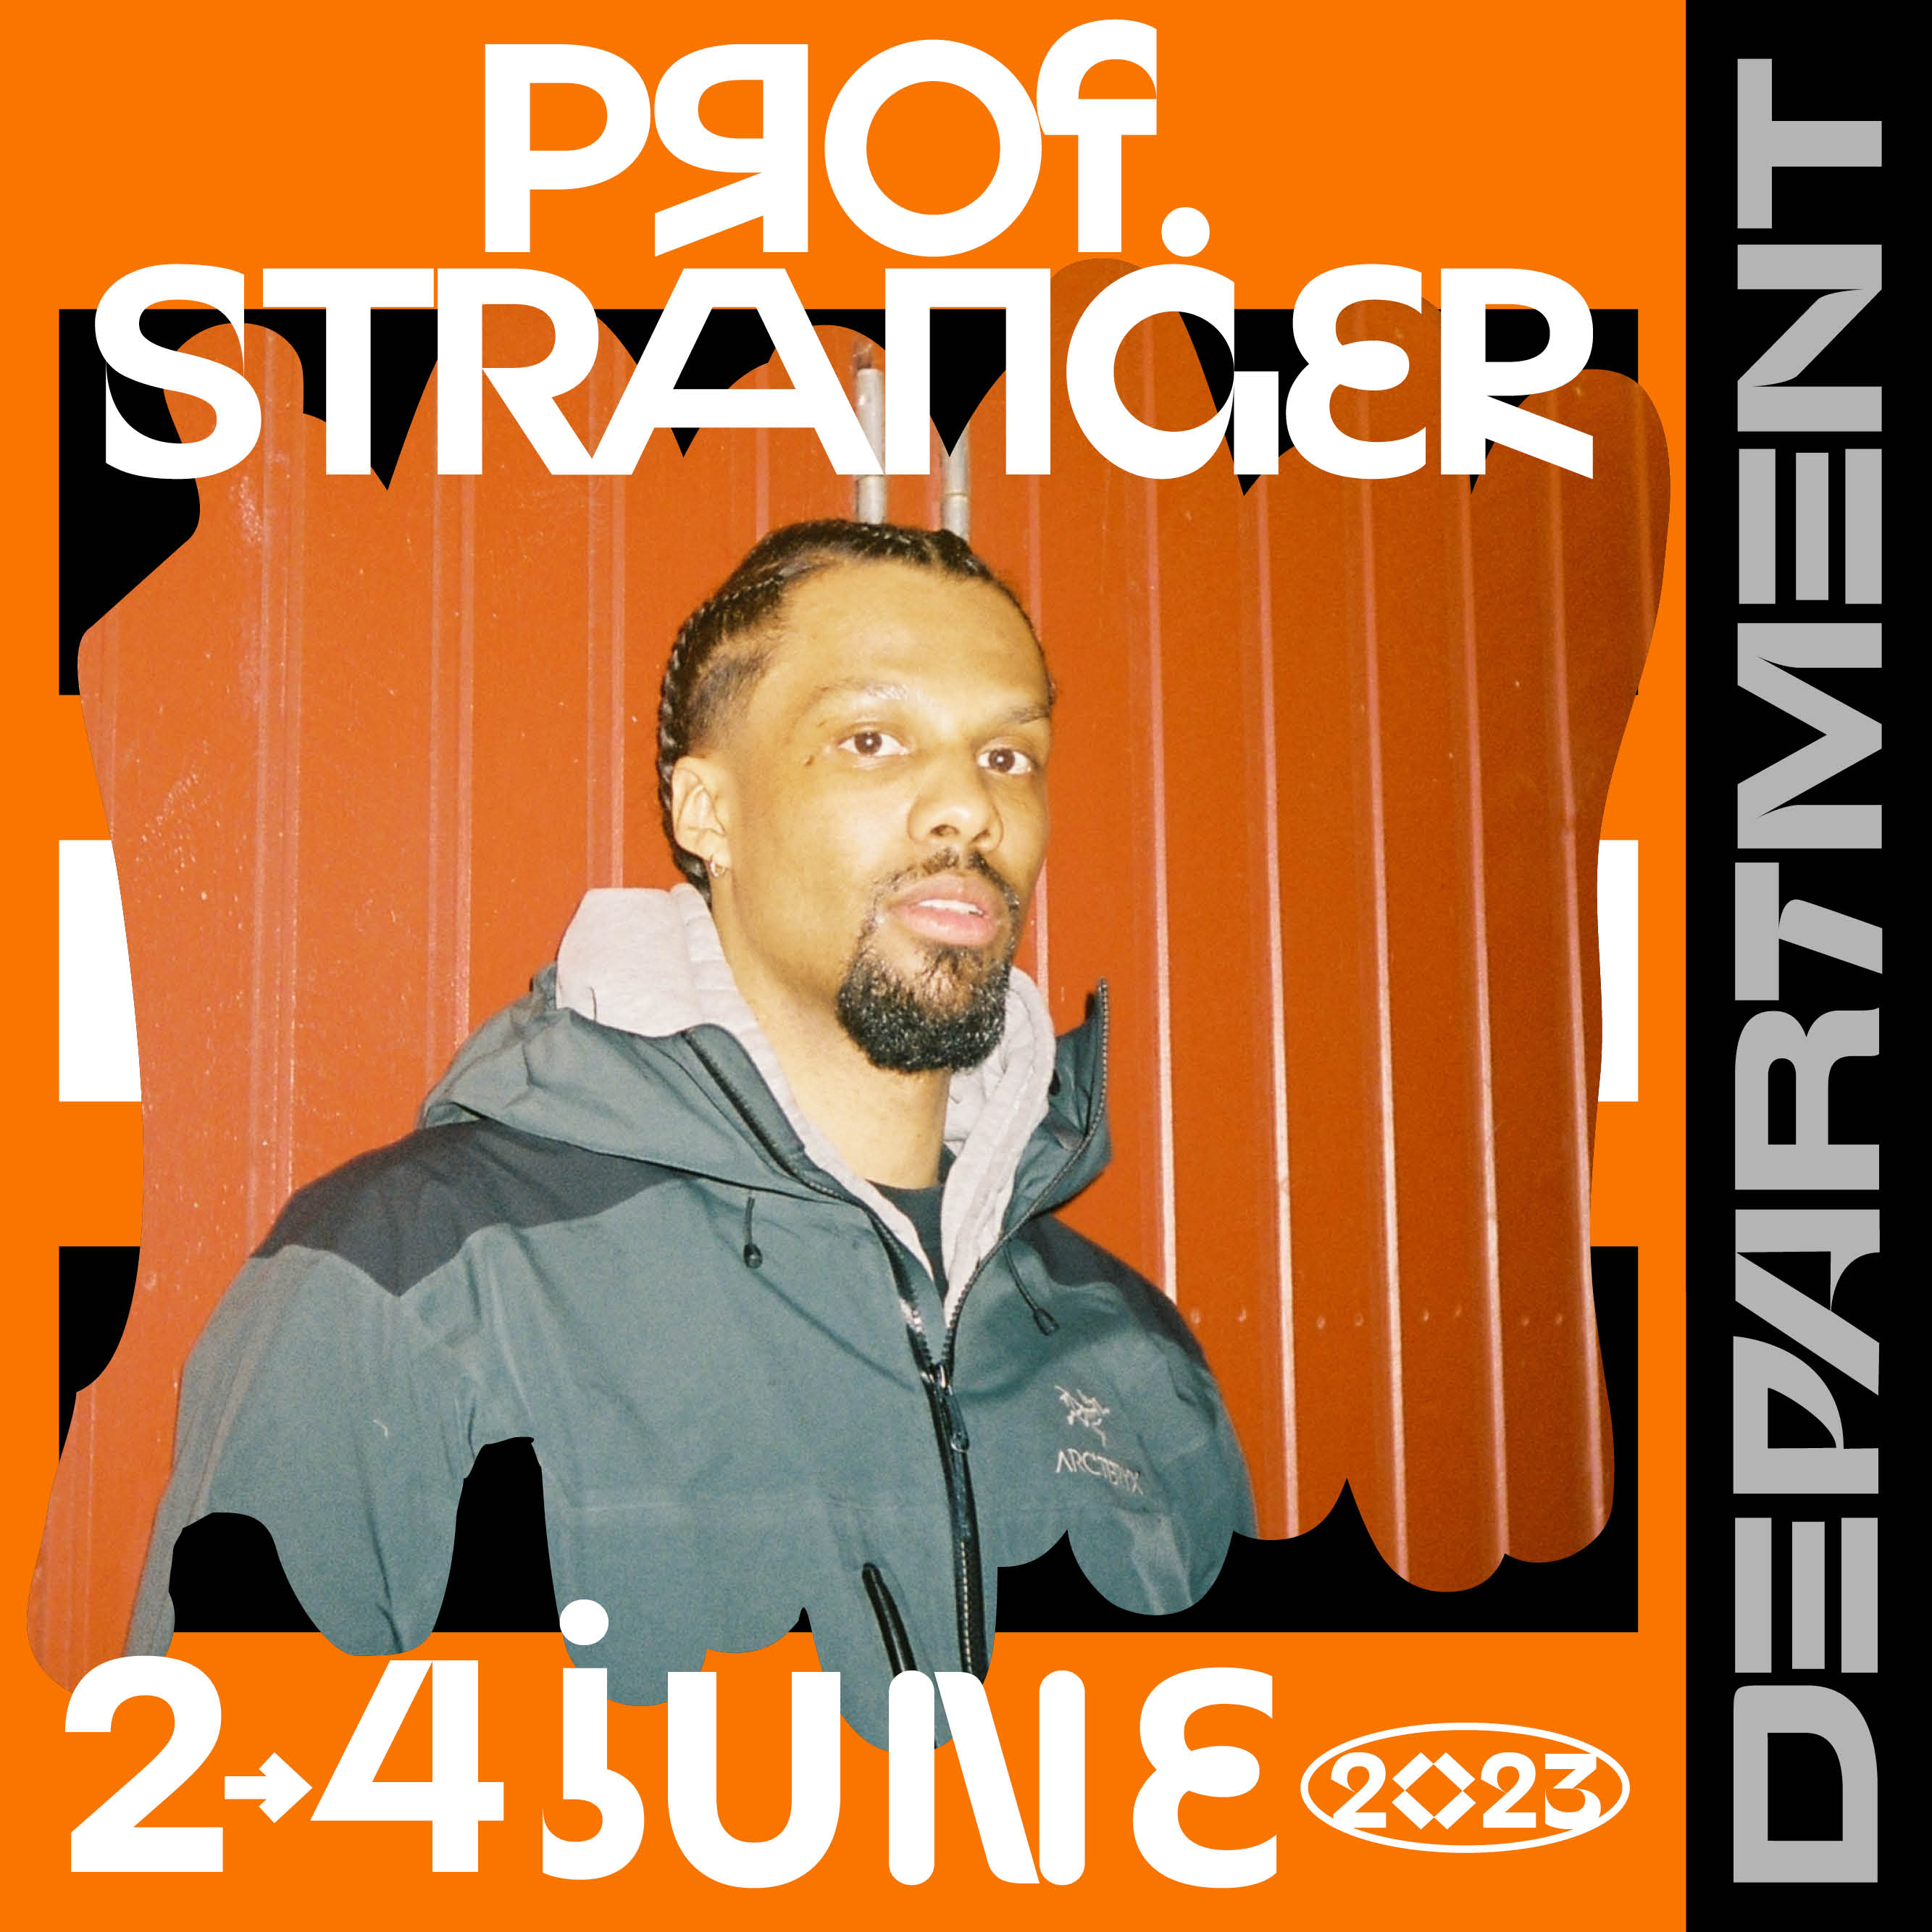 Prof Stranger Stockholm Department Festival